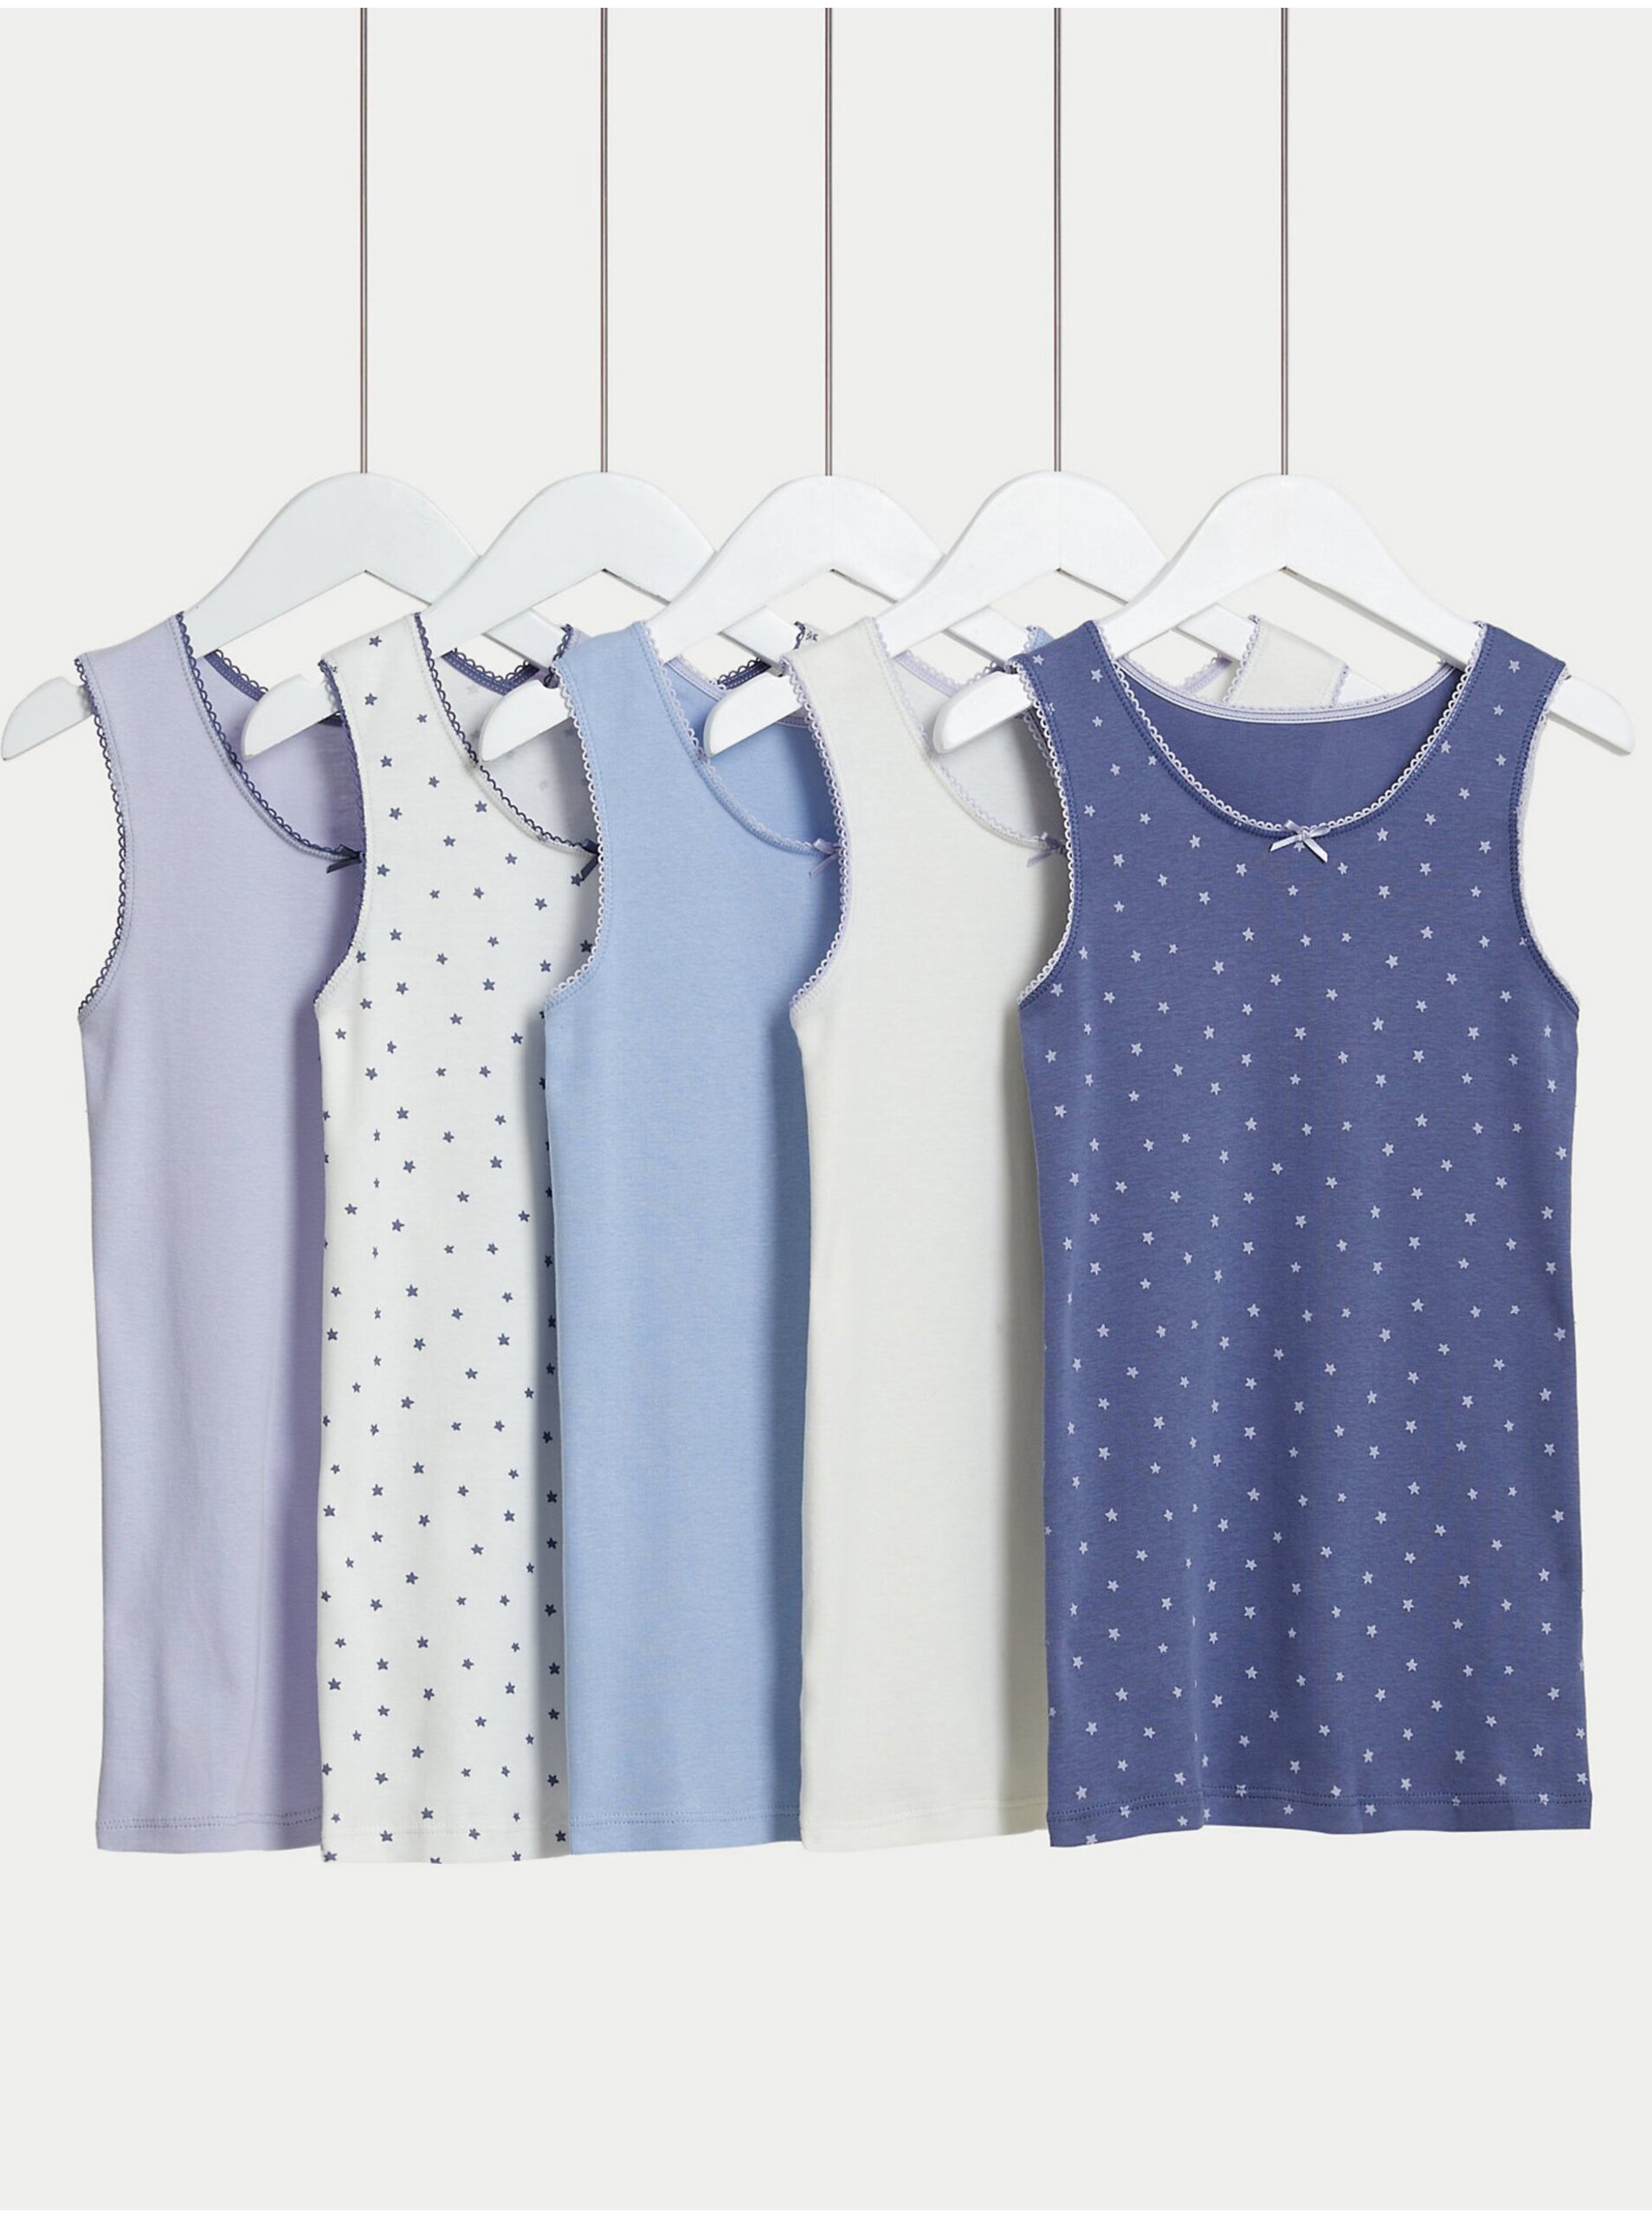 Lacno Súprava piatich dievčenských vzorovaných tielok v modrej, fialovej a bielej farbe Marks & Spencer